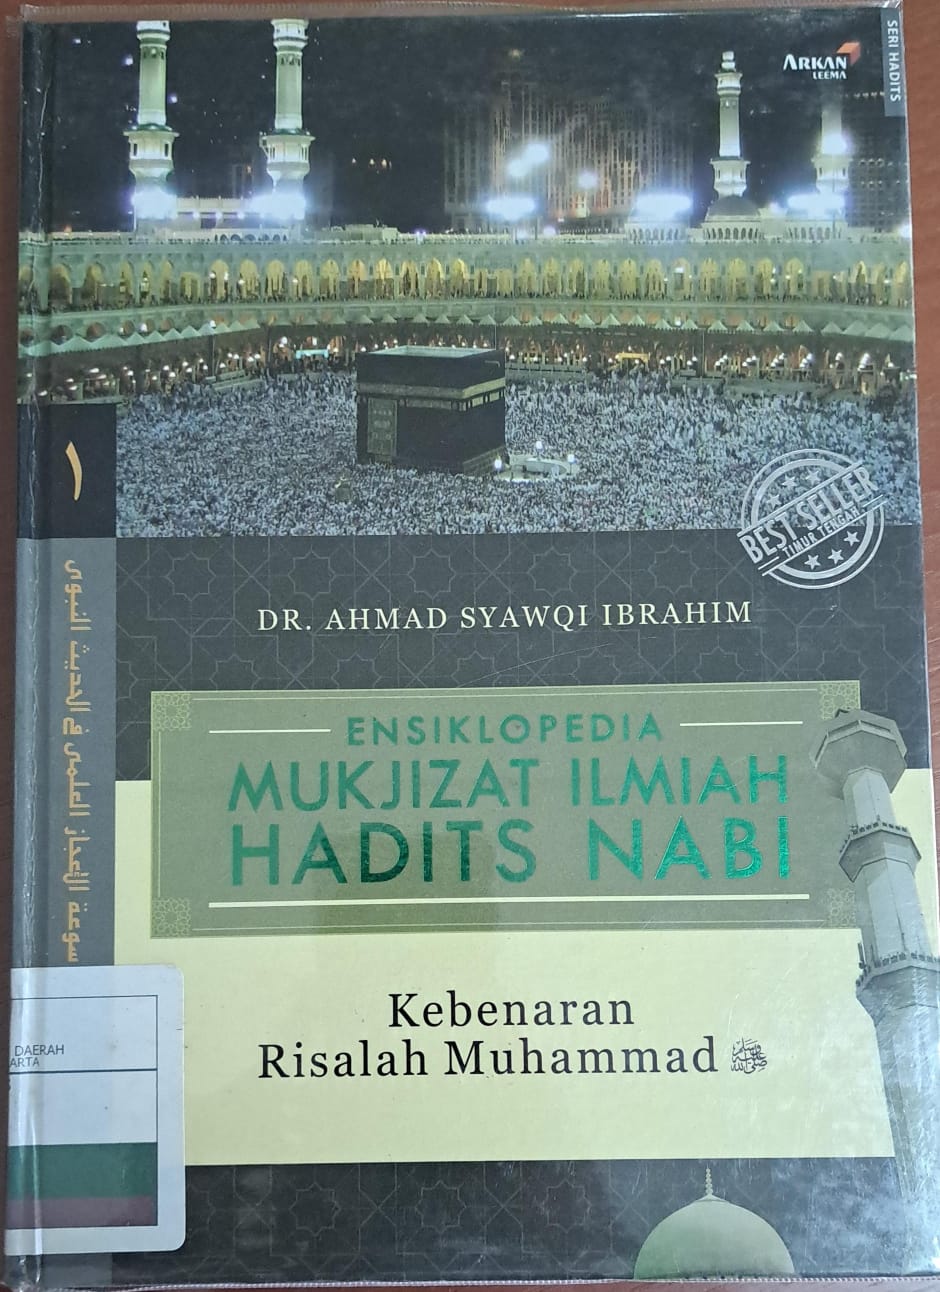 Ensiklopedia mukjizat ilmiah hadits nabi jilid 1 :  Kebenaran risalah Muhammad